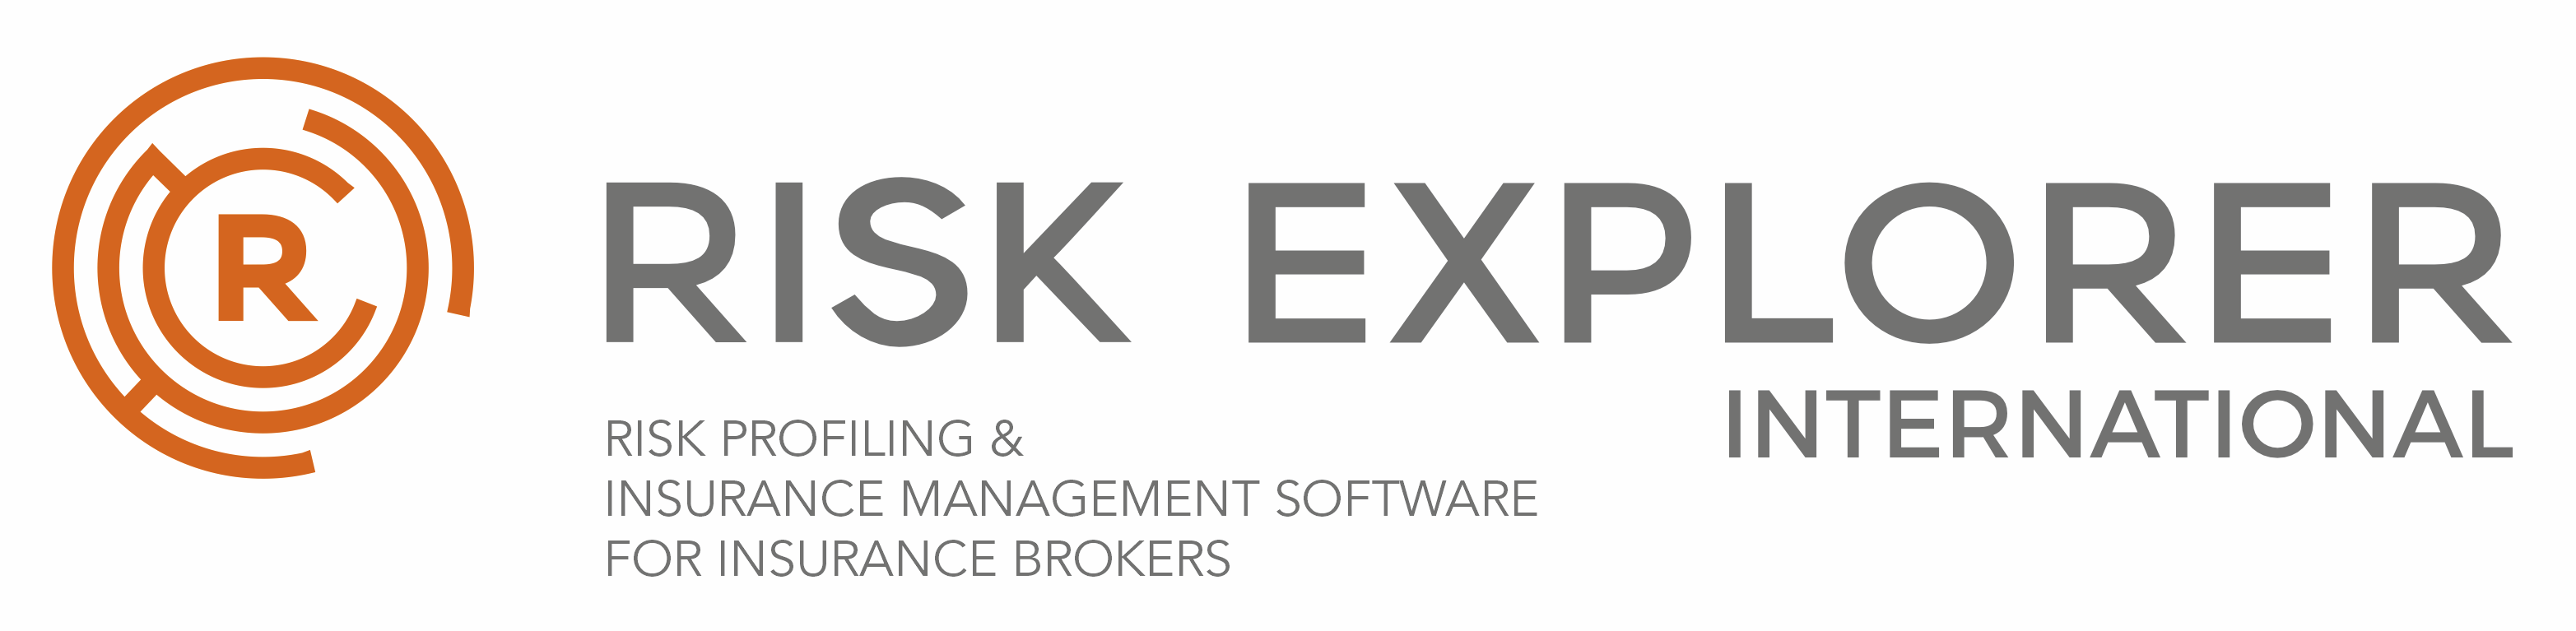 Risk Explorer International Teaser Logo